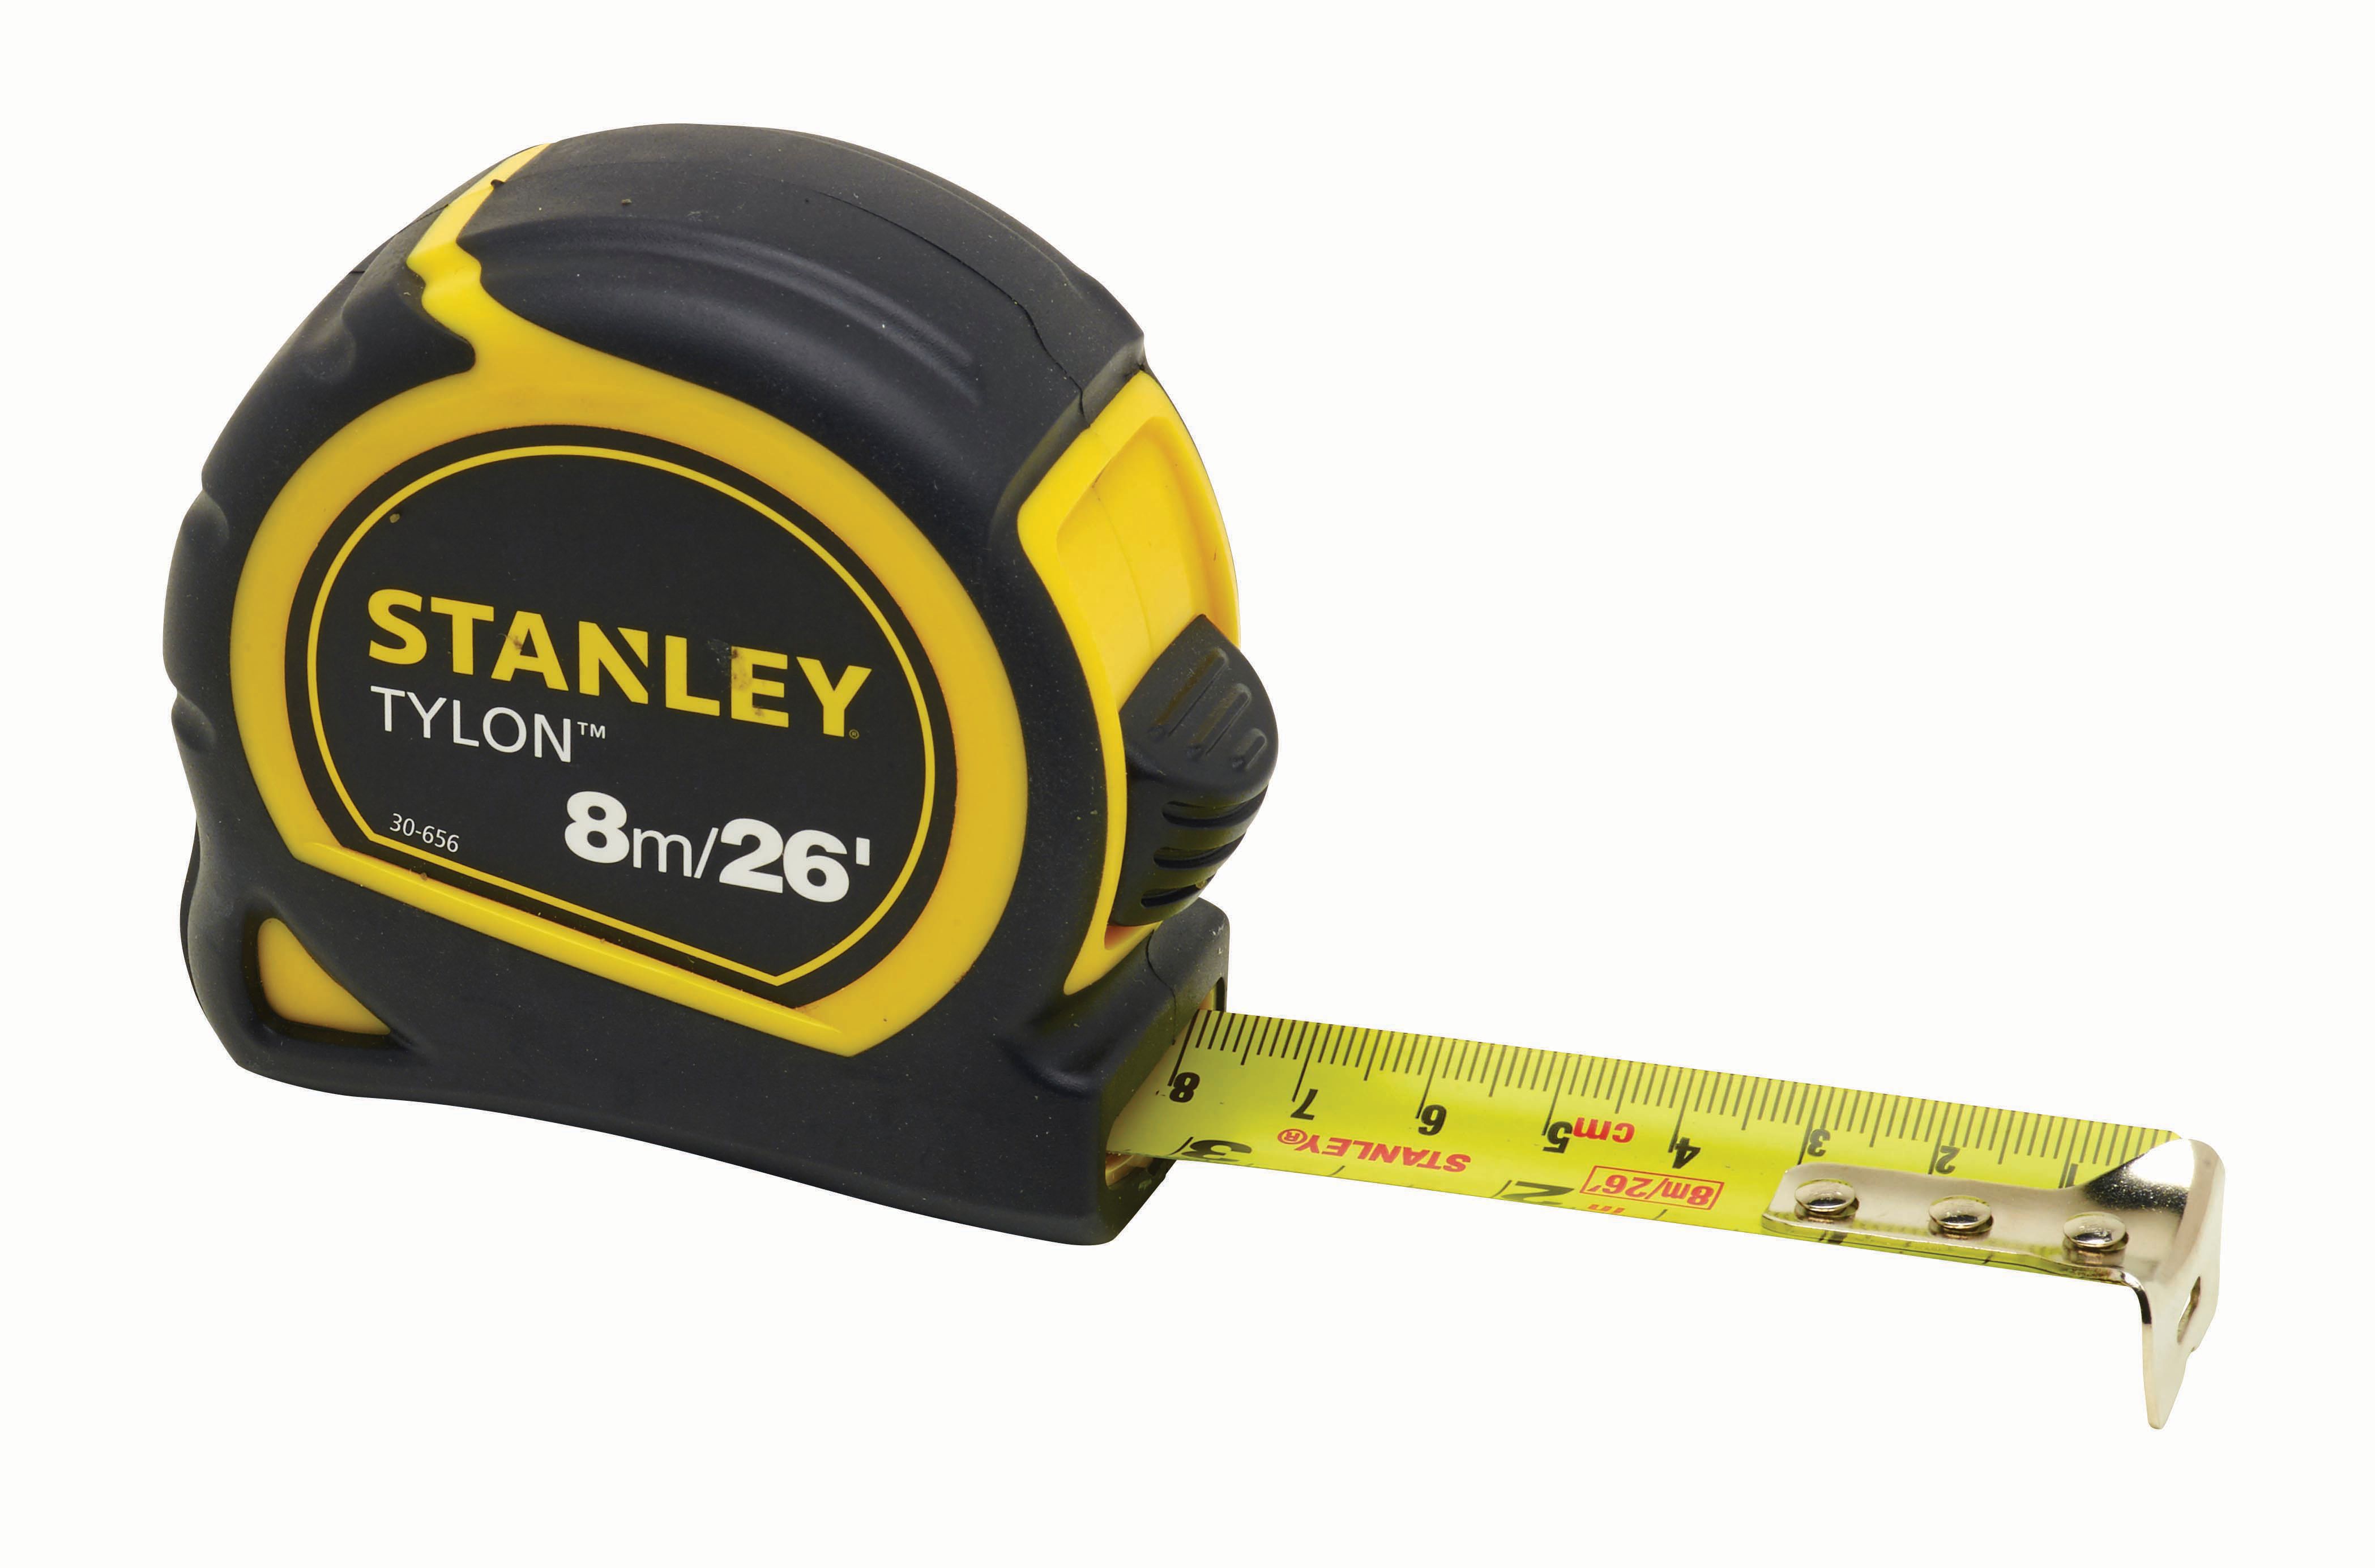 Image of Stanley 0-30-656 Tylon Tape Measure - 8m